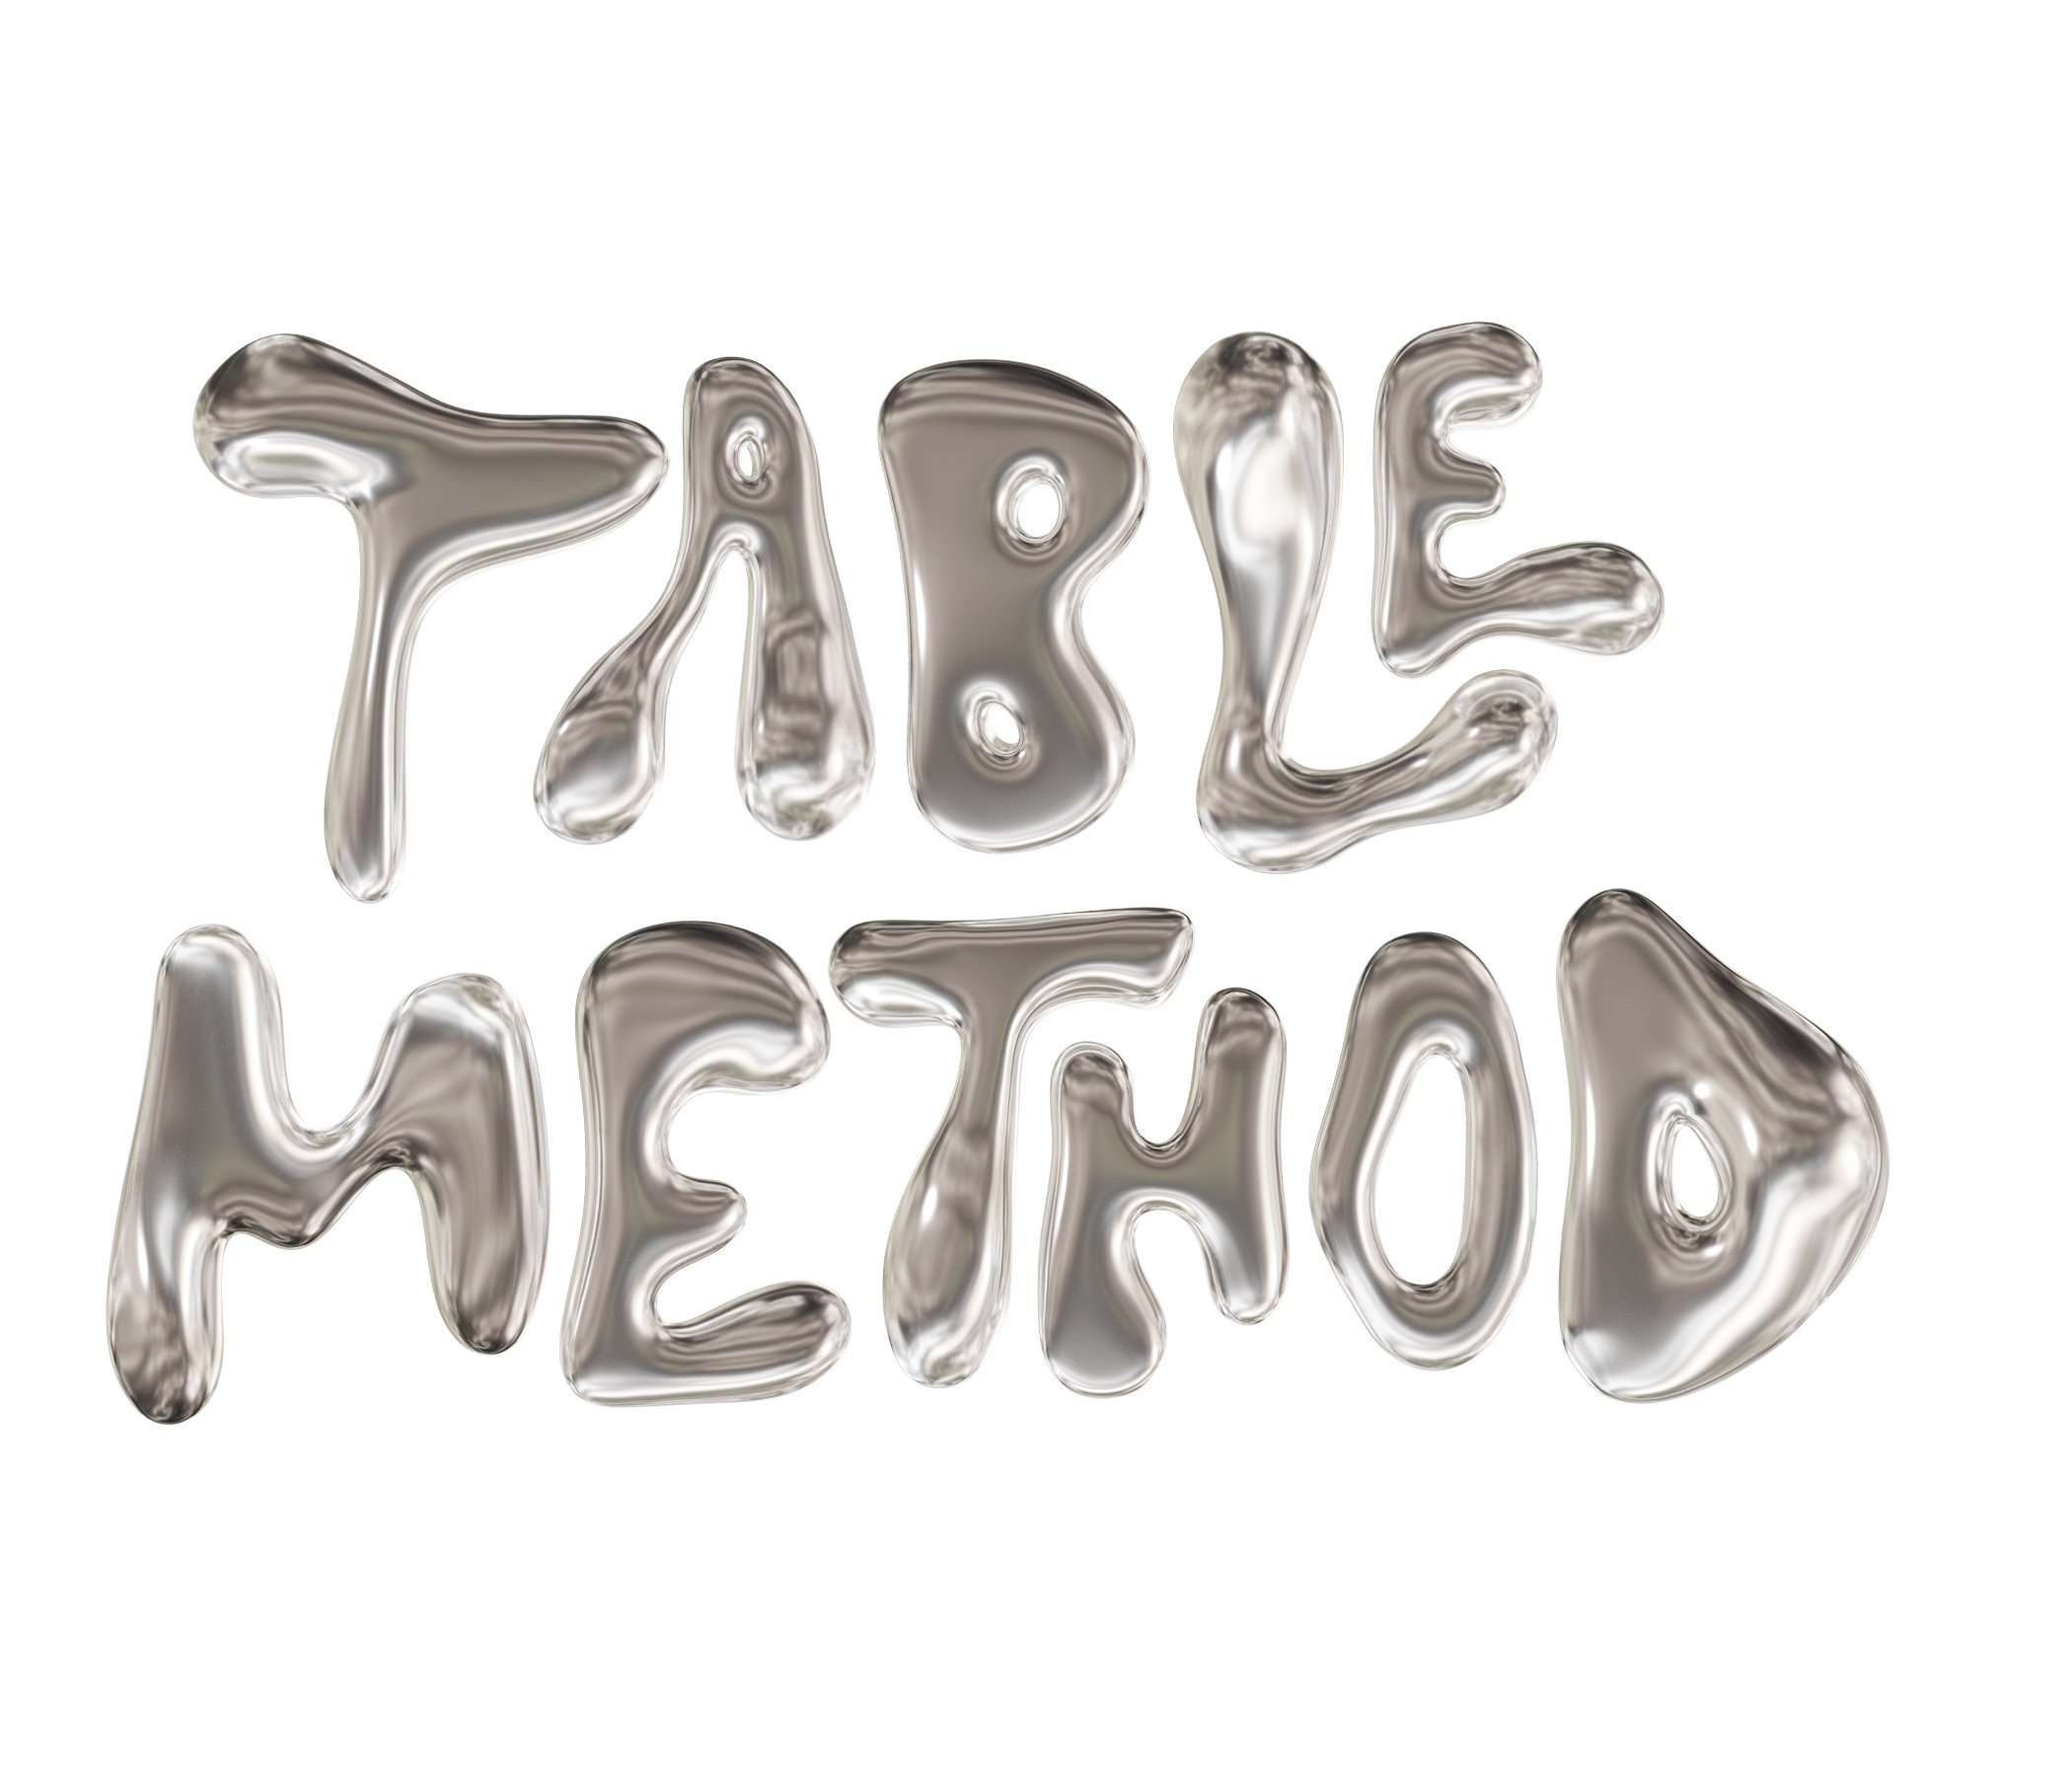 TABLE METHOD